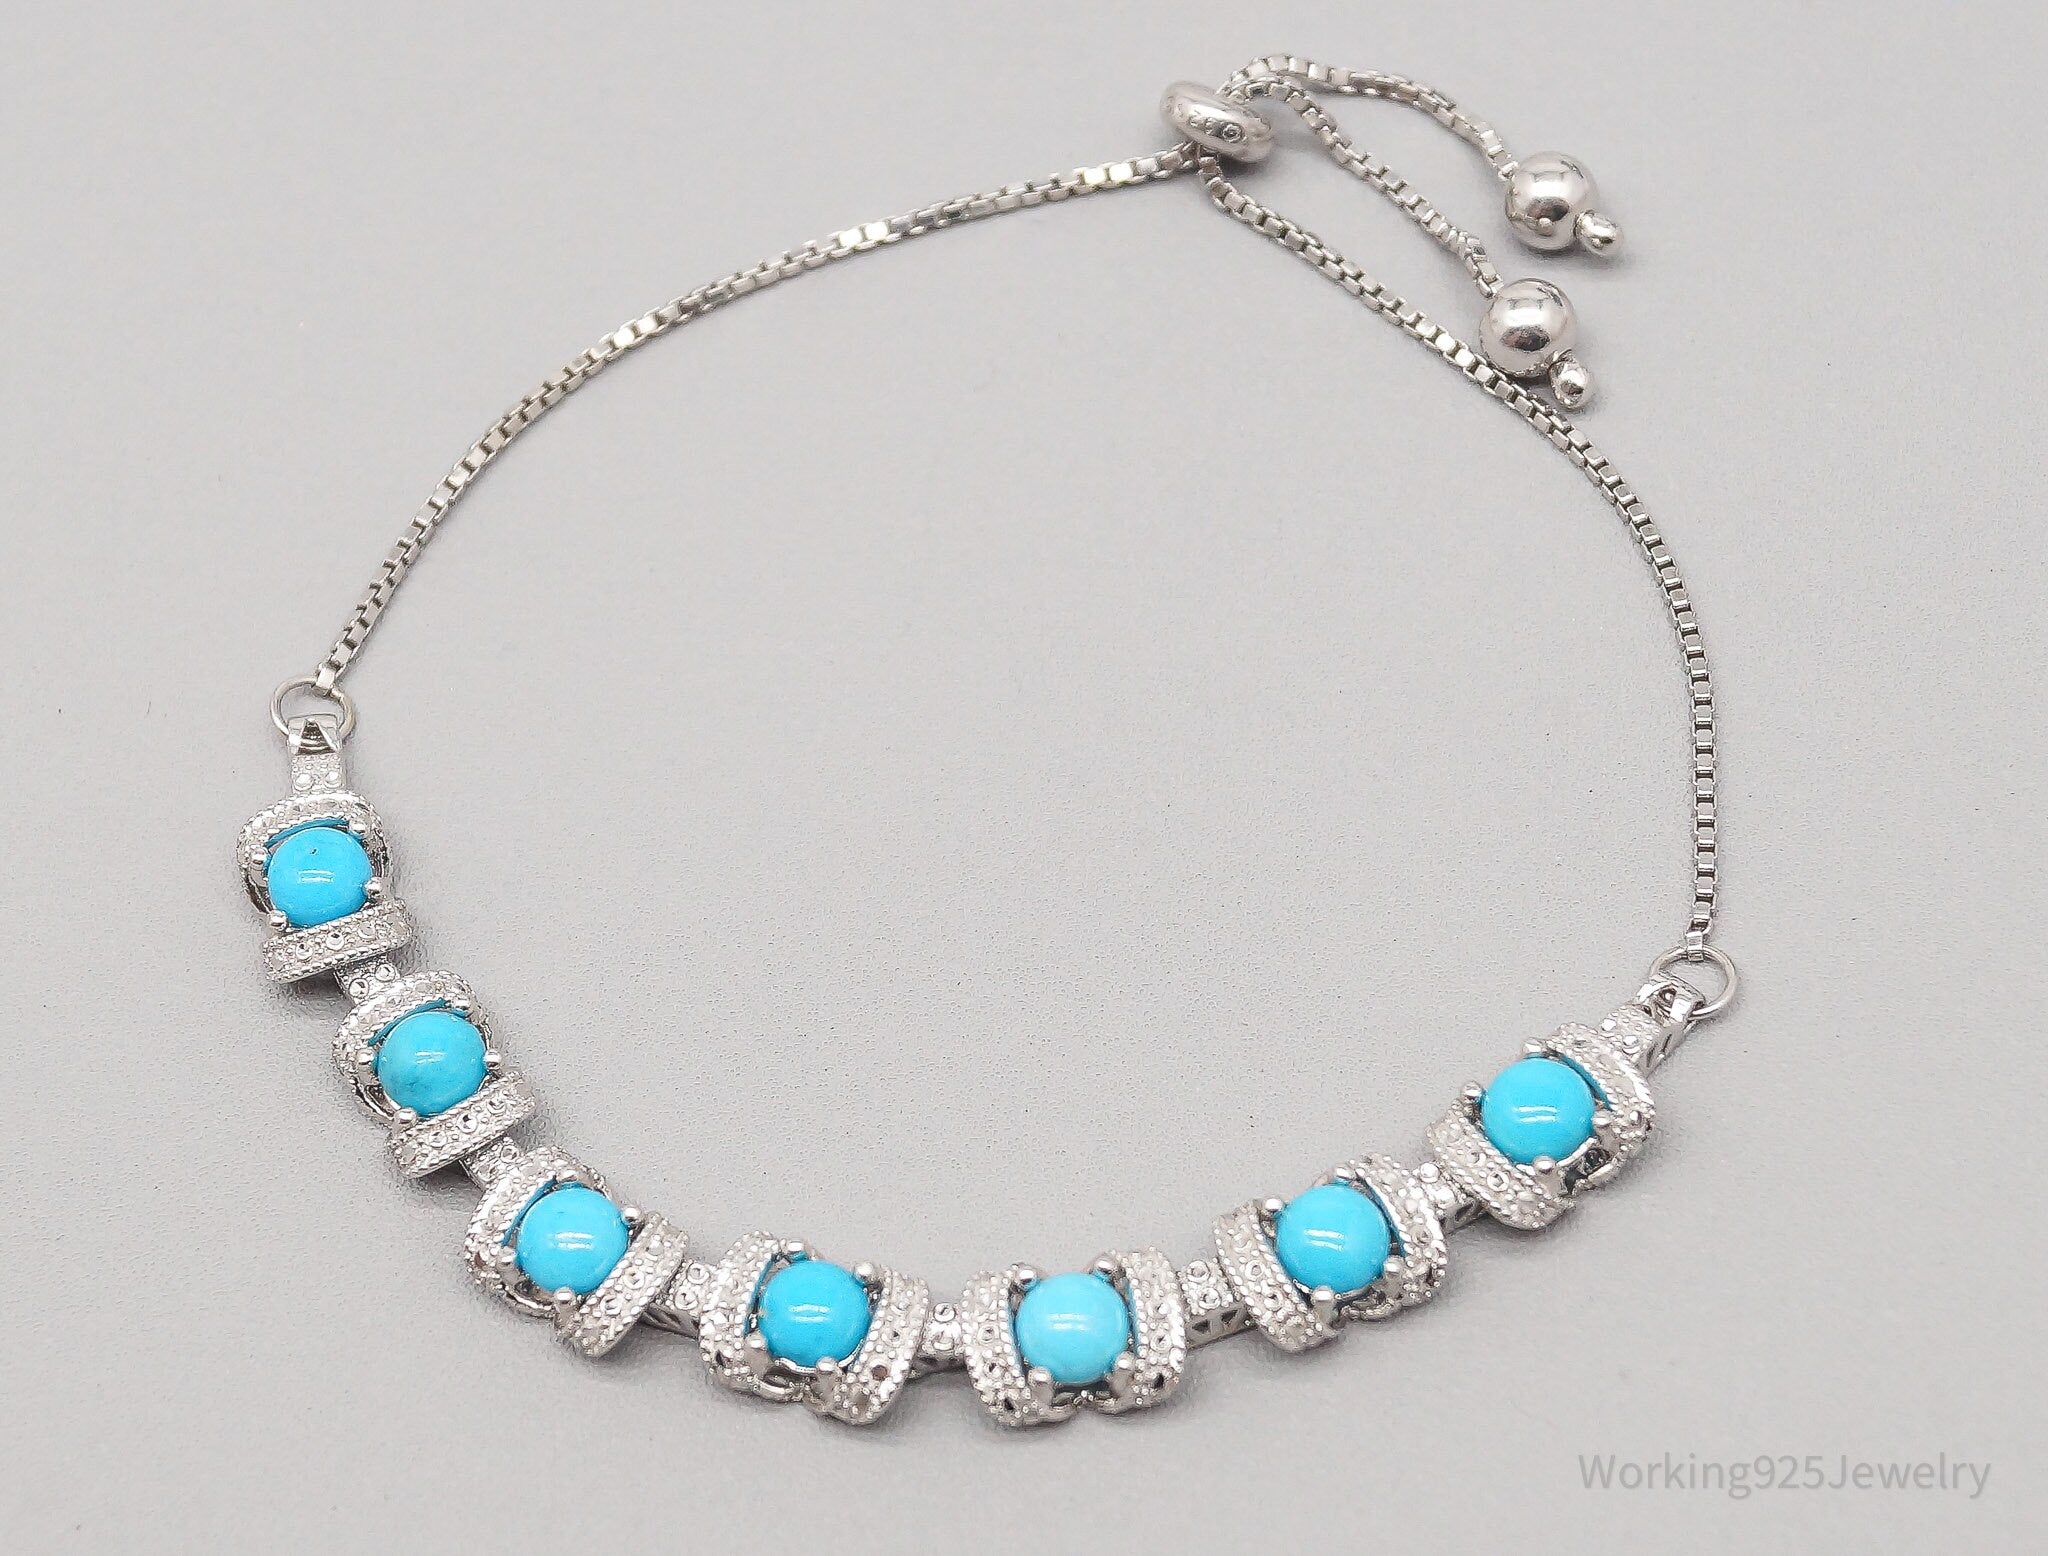 Vintage Blue Turquoise Sterling Silver Adjustable Bracelet / Anklet - 9 7/8"